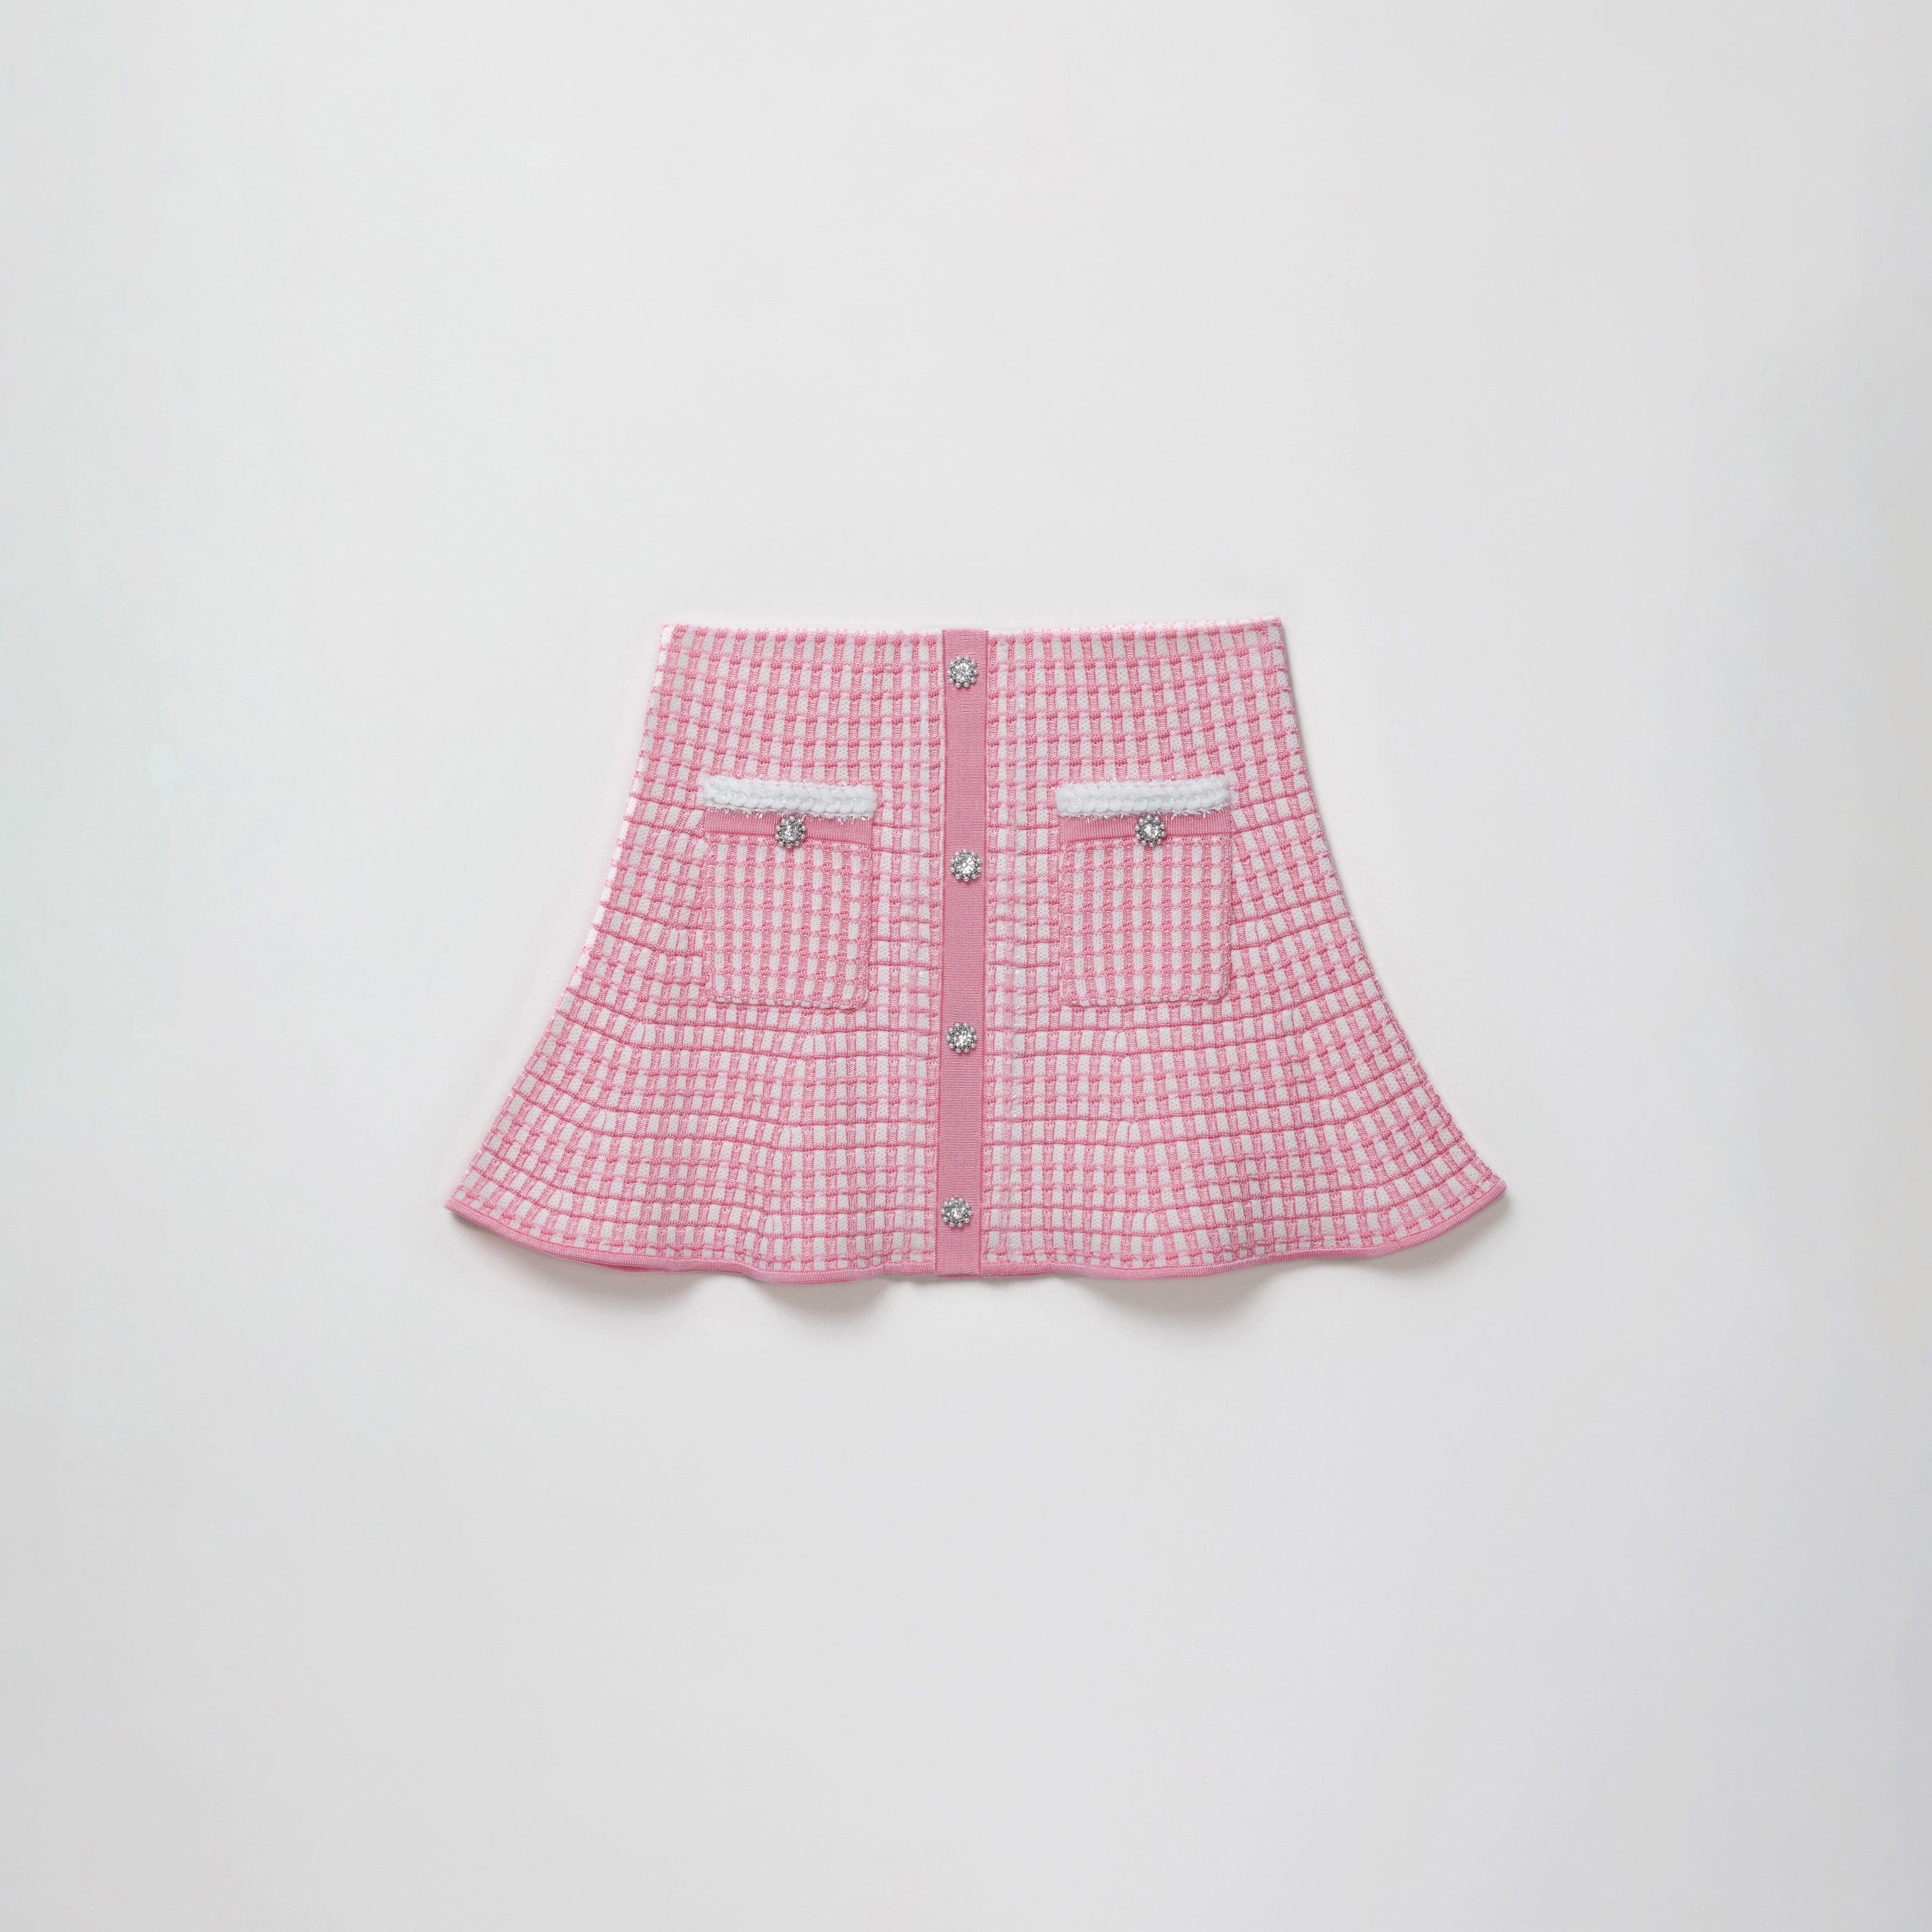 Bright Pink Knit Mini Skirt